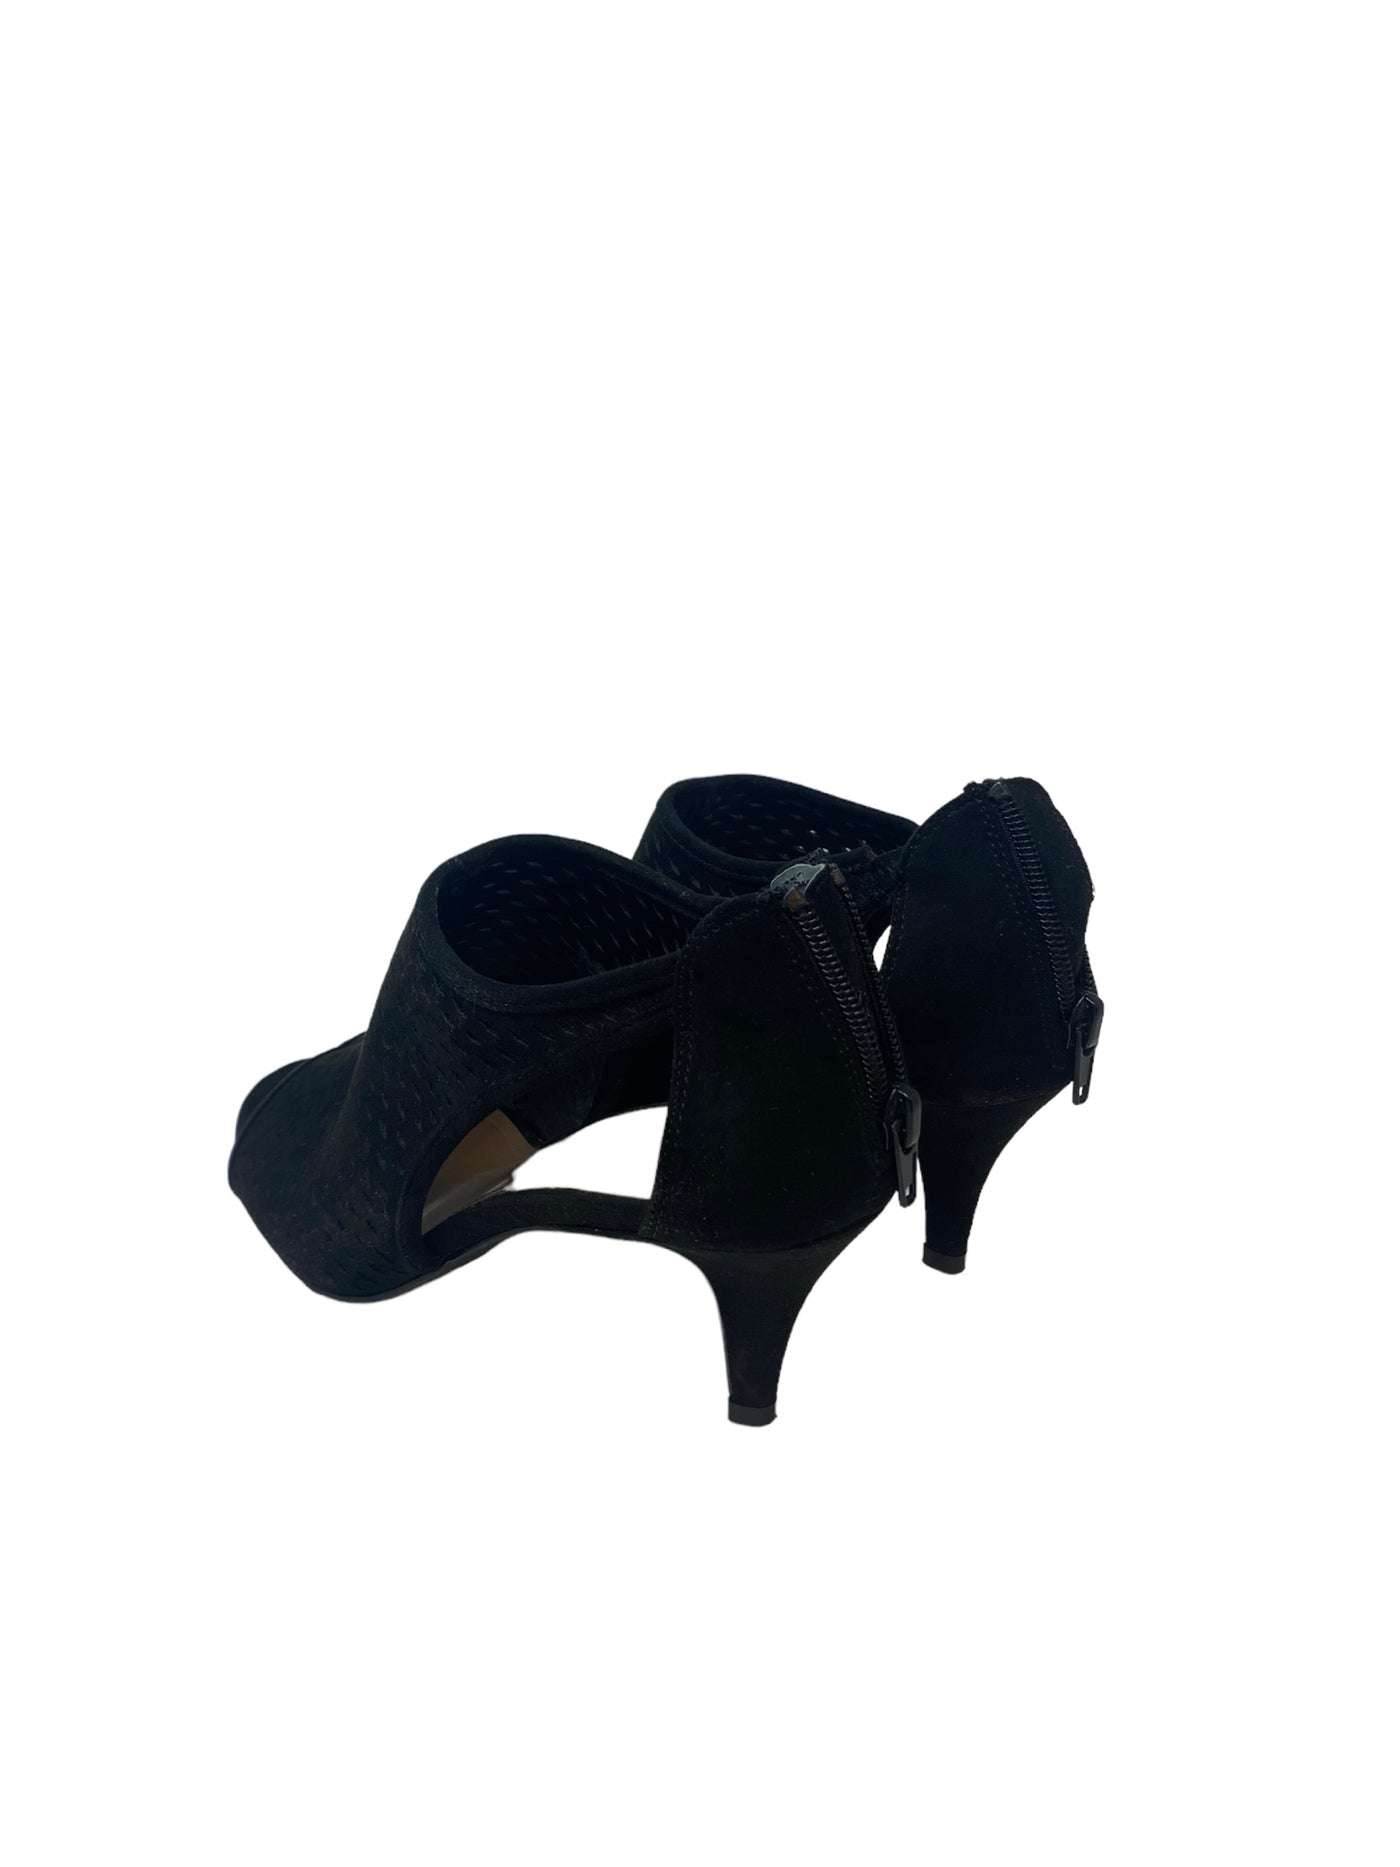 Style & Co. Women Size 8 Black Heels